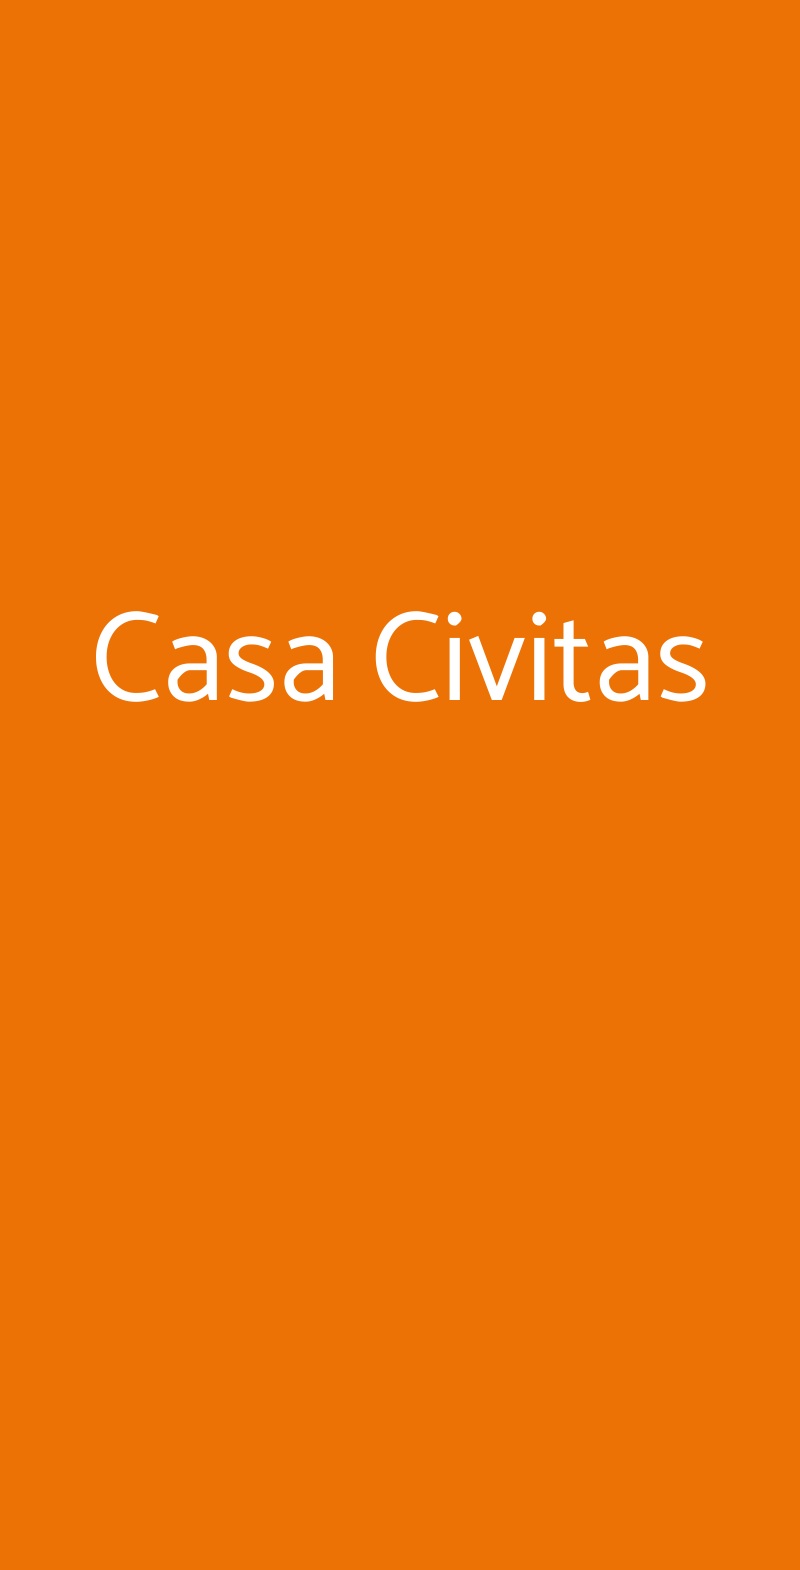 Casa Civitas Castelcivita menù 1 pagina